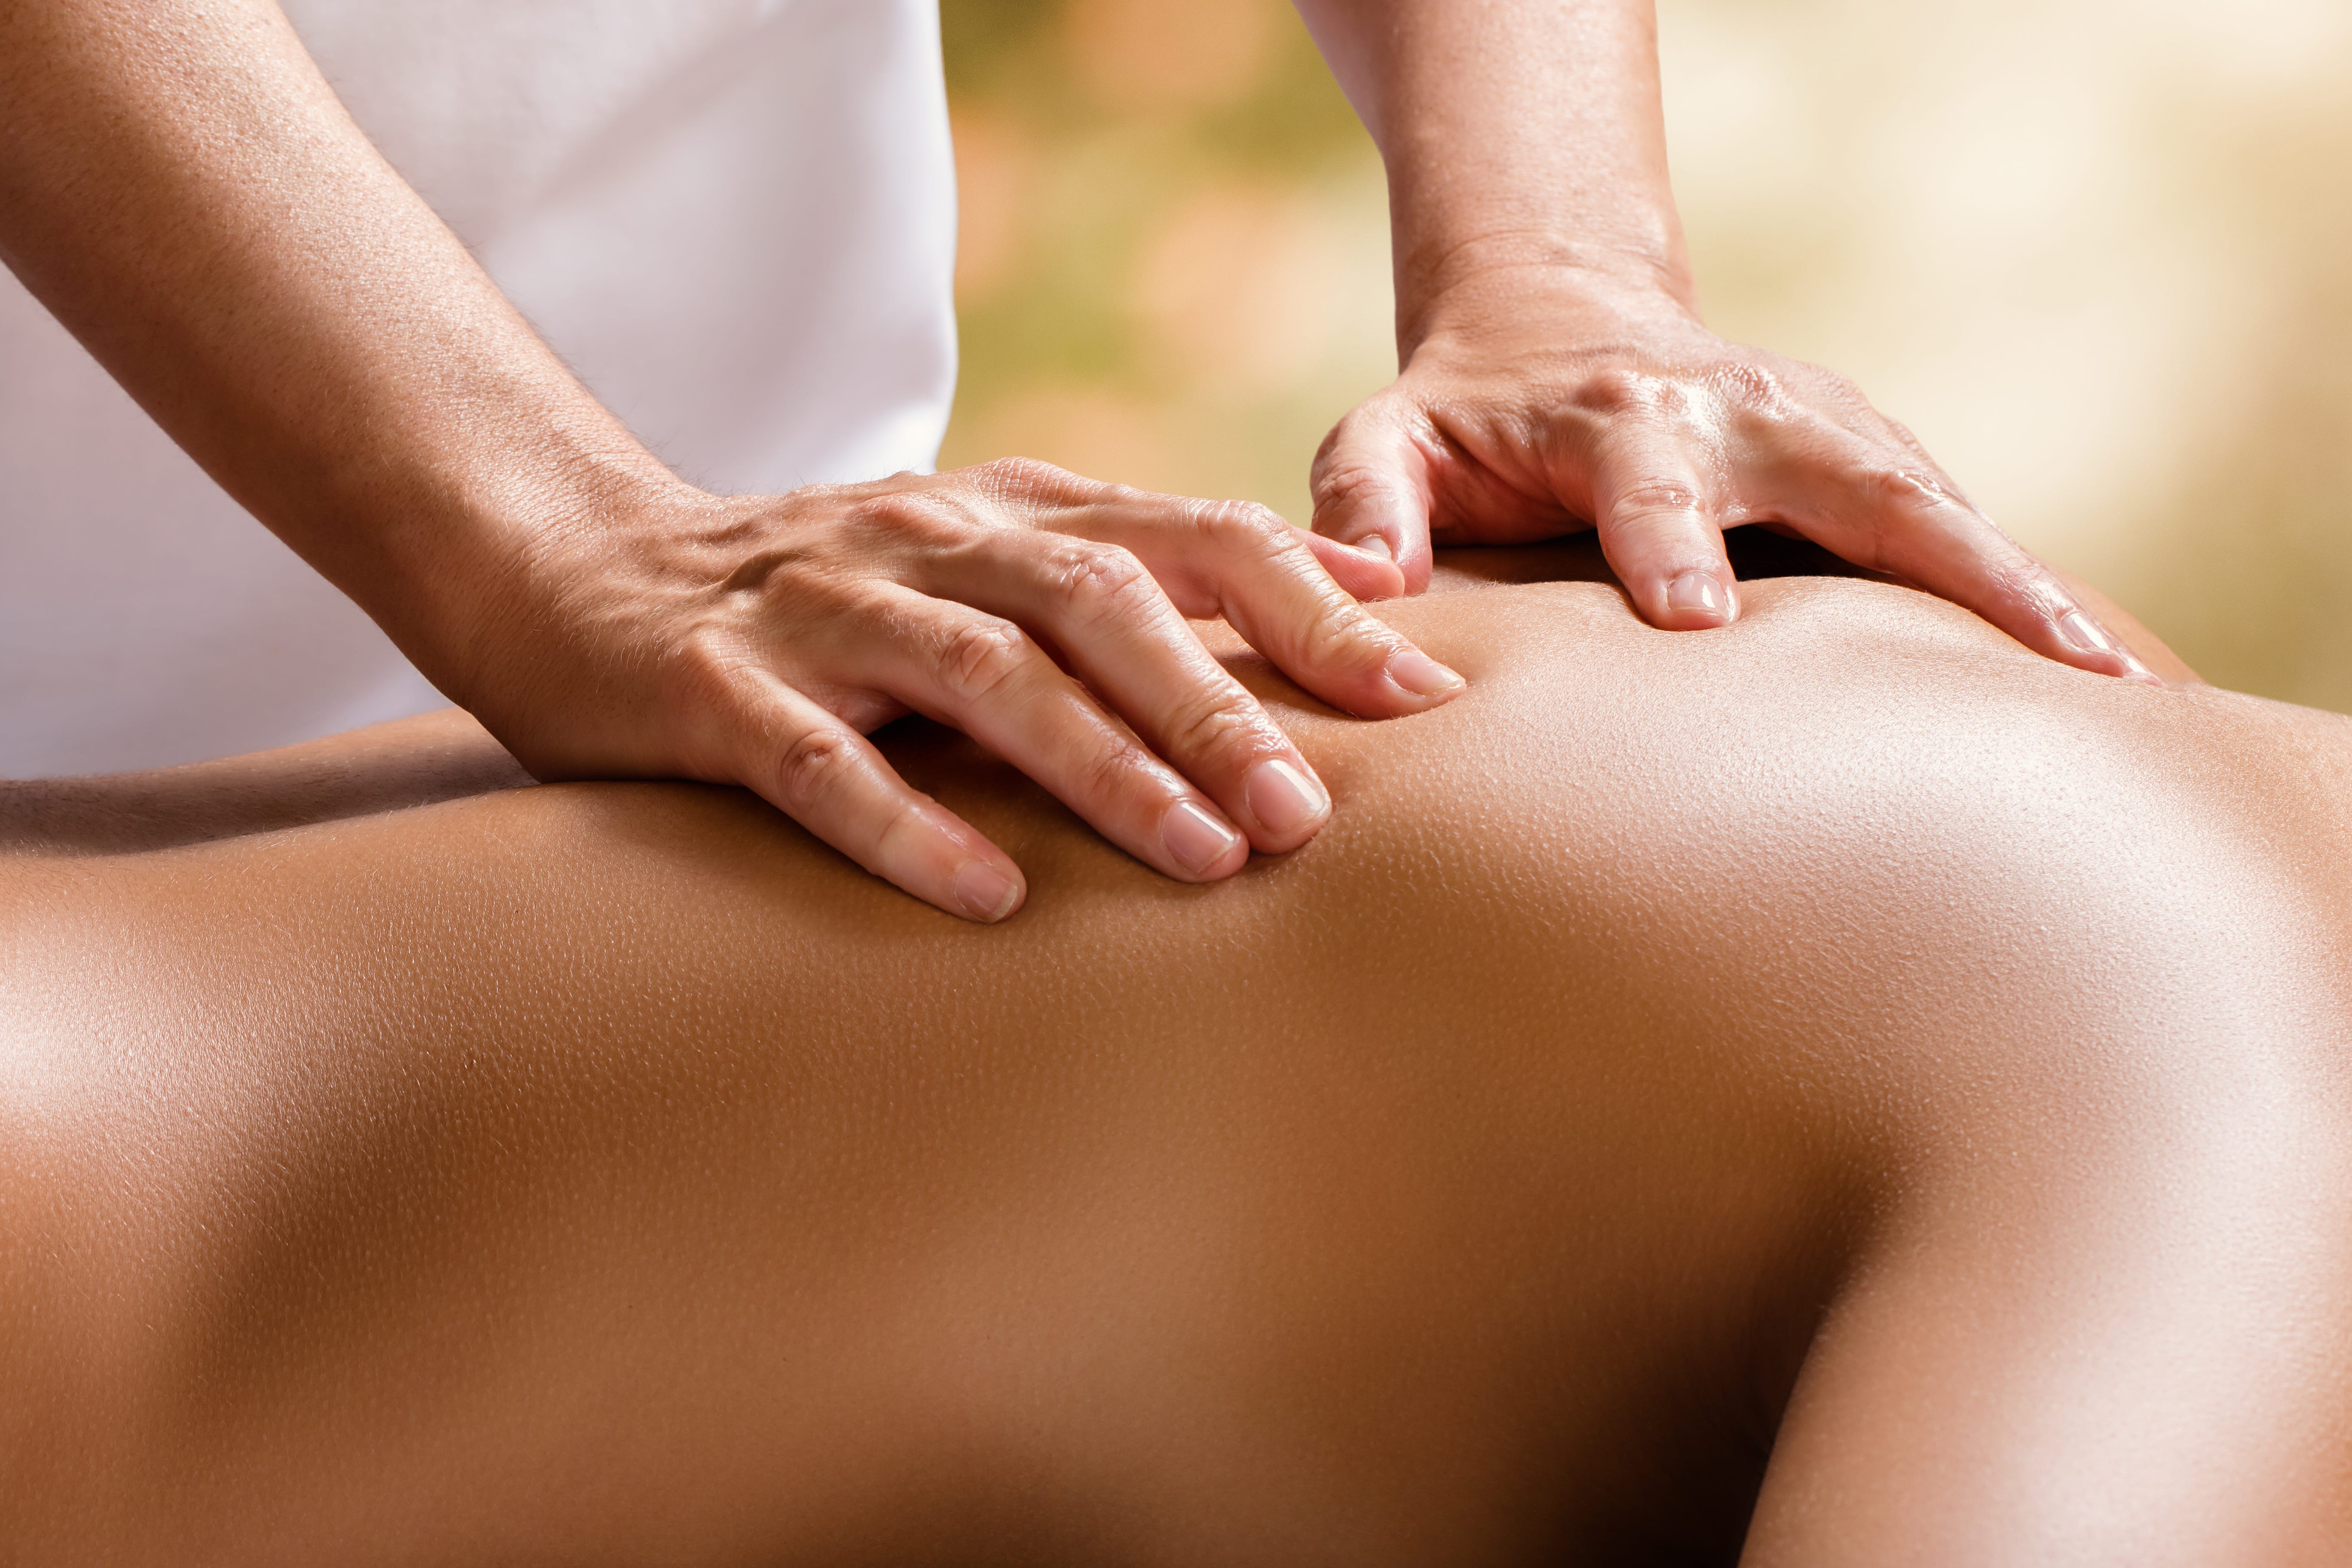 Sensual massage northwest chandler